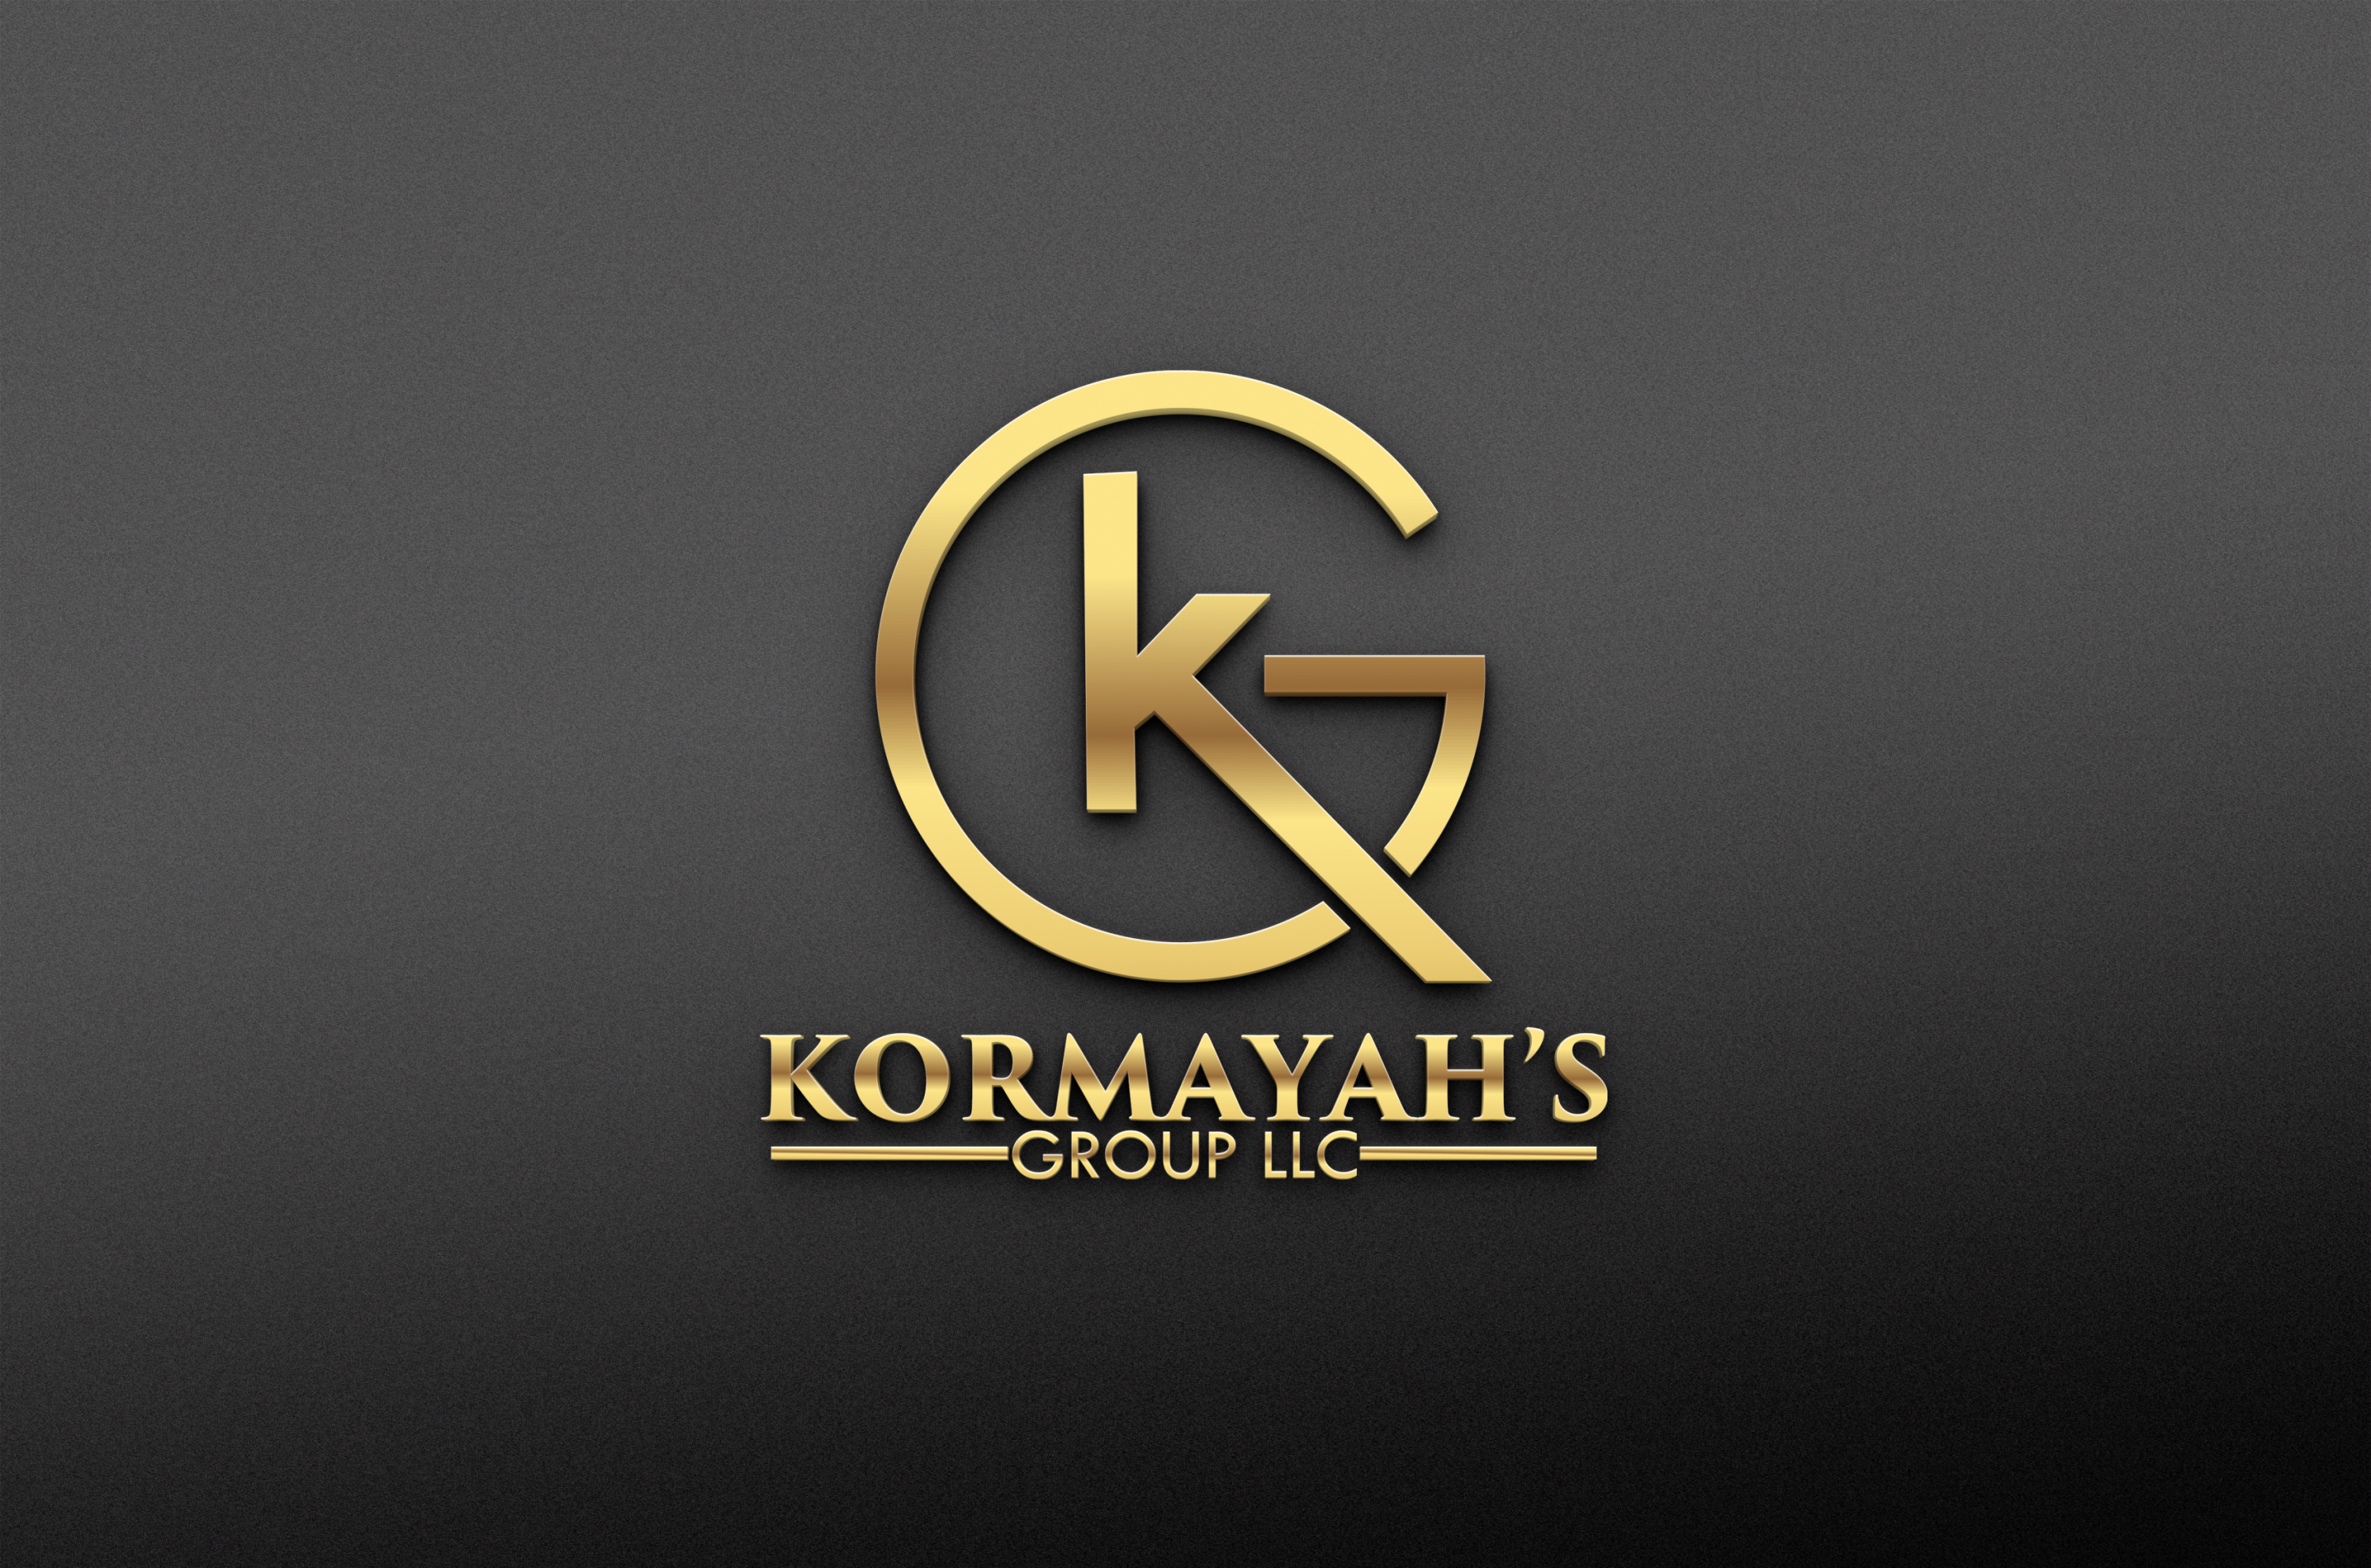 KORMAYAH'S GROUP LLC